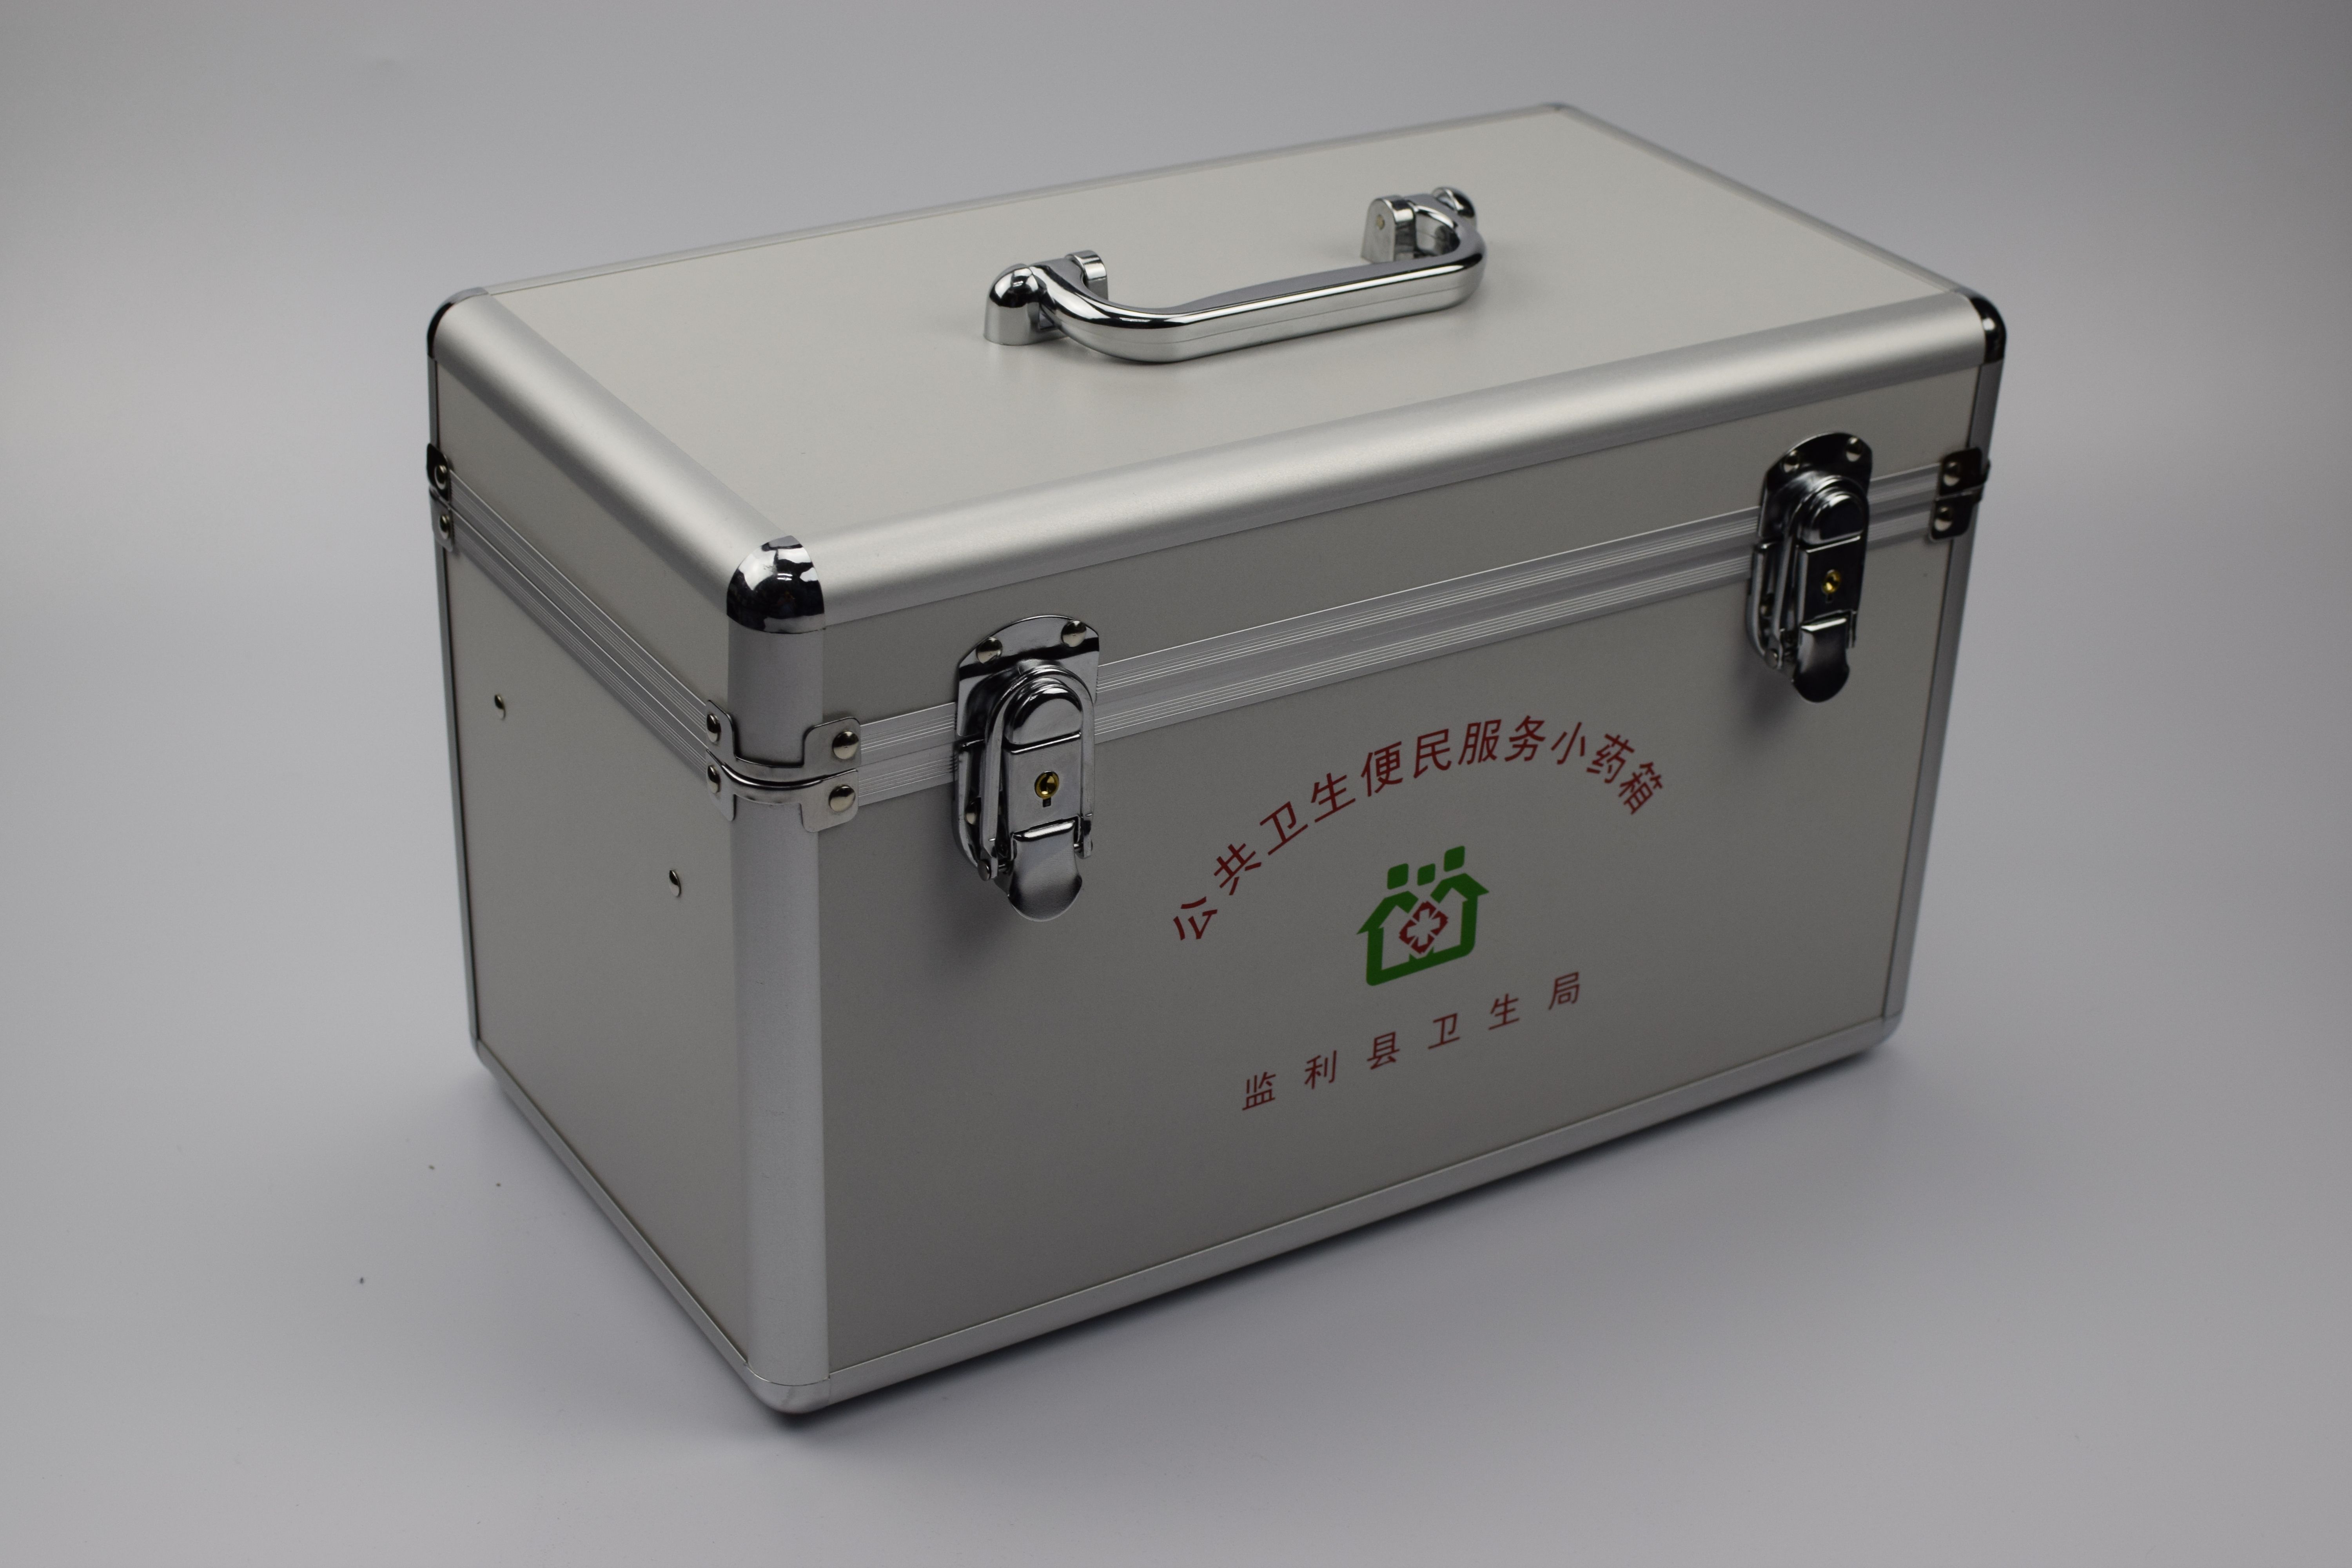 厂家供应五金工具箱 铝合金工具箱包 便携手提铝制药箱